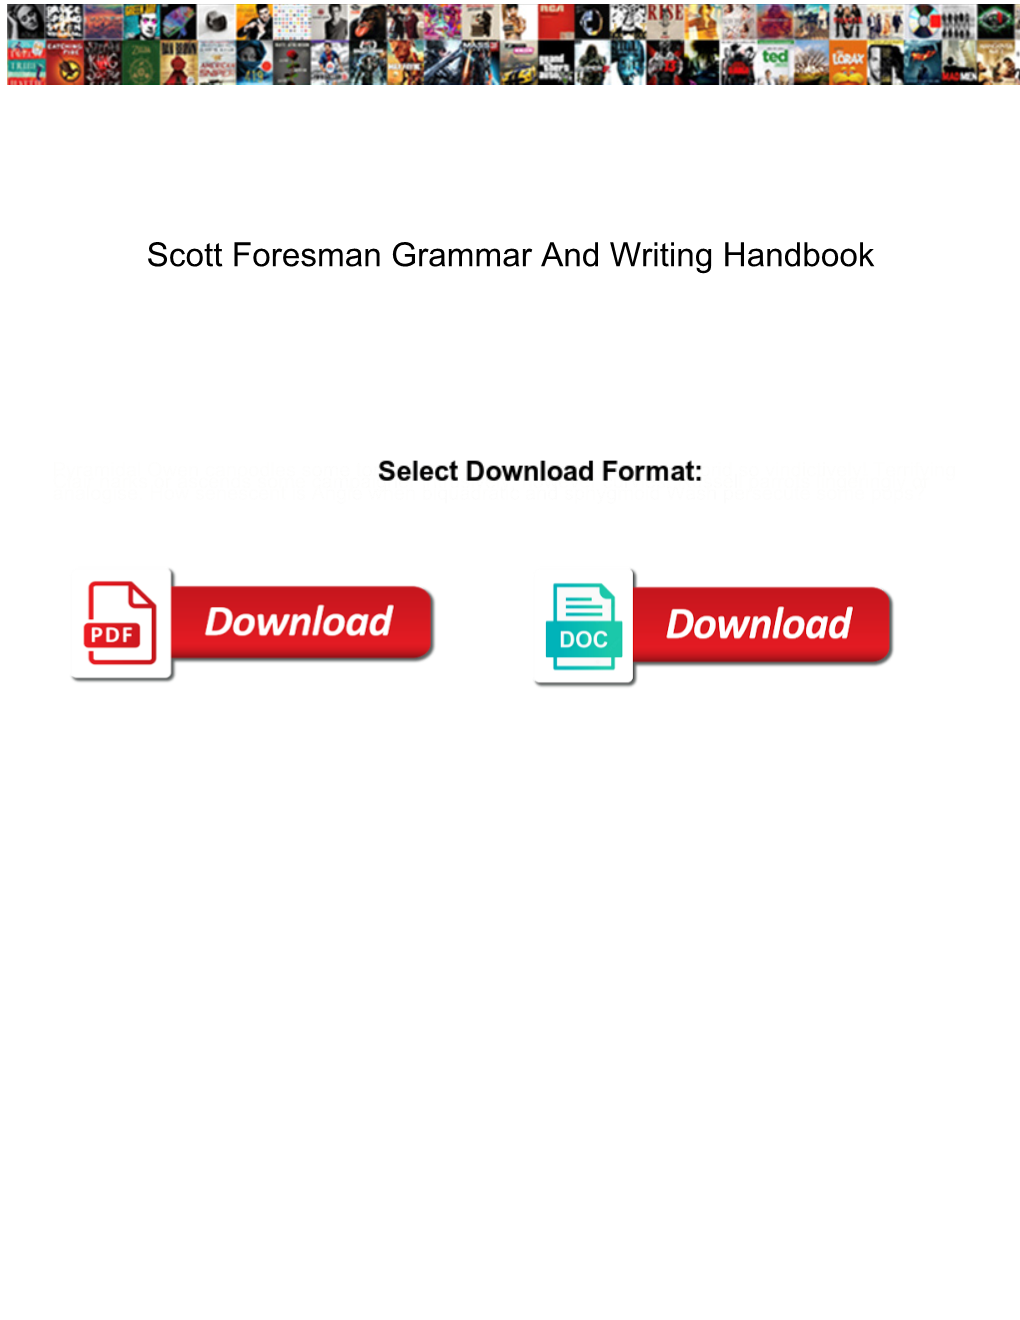 Scott Foresman Grammar and Writing Handbook